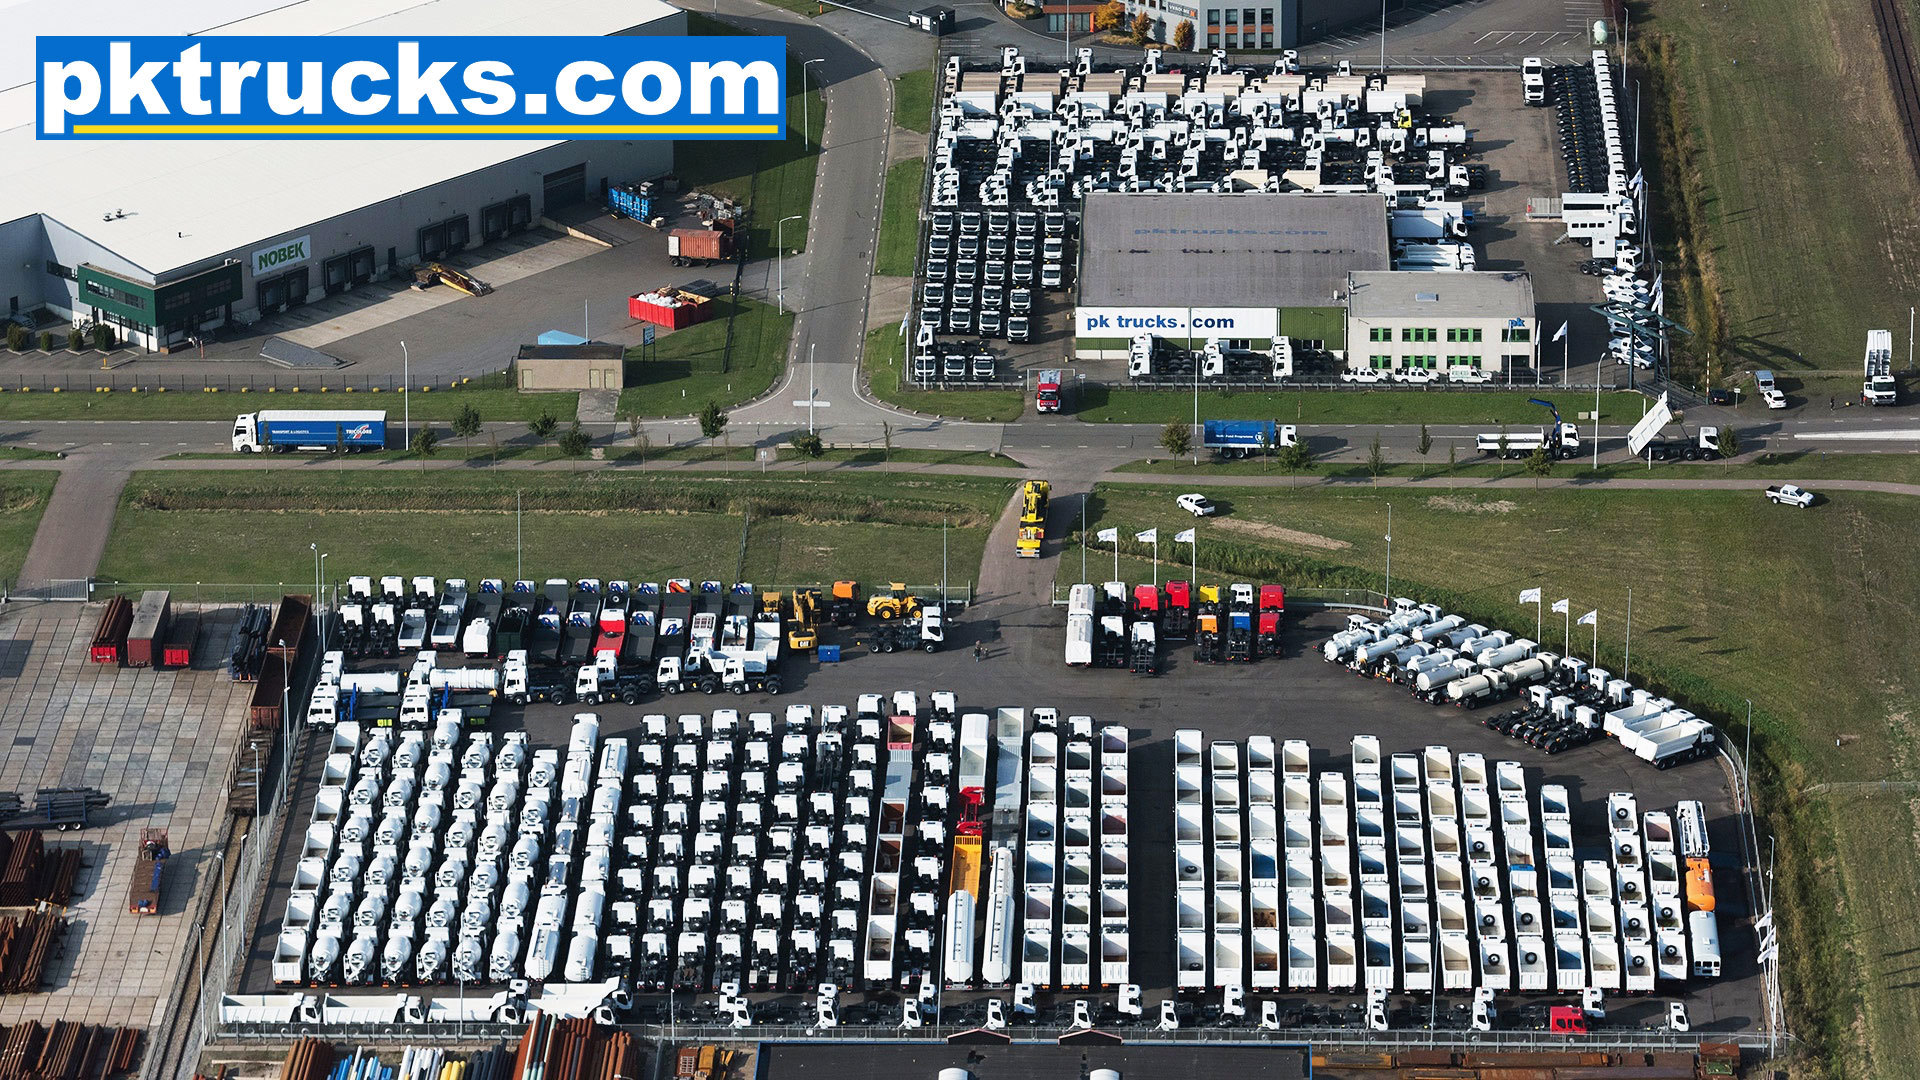 Pk trucks holland undefined: obrázok 1